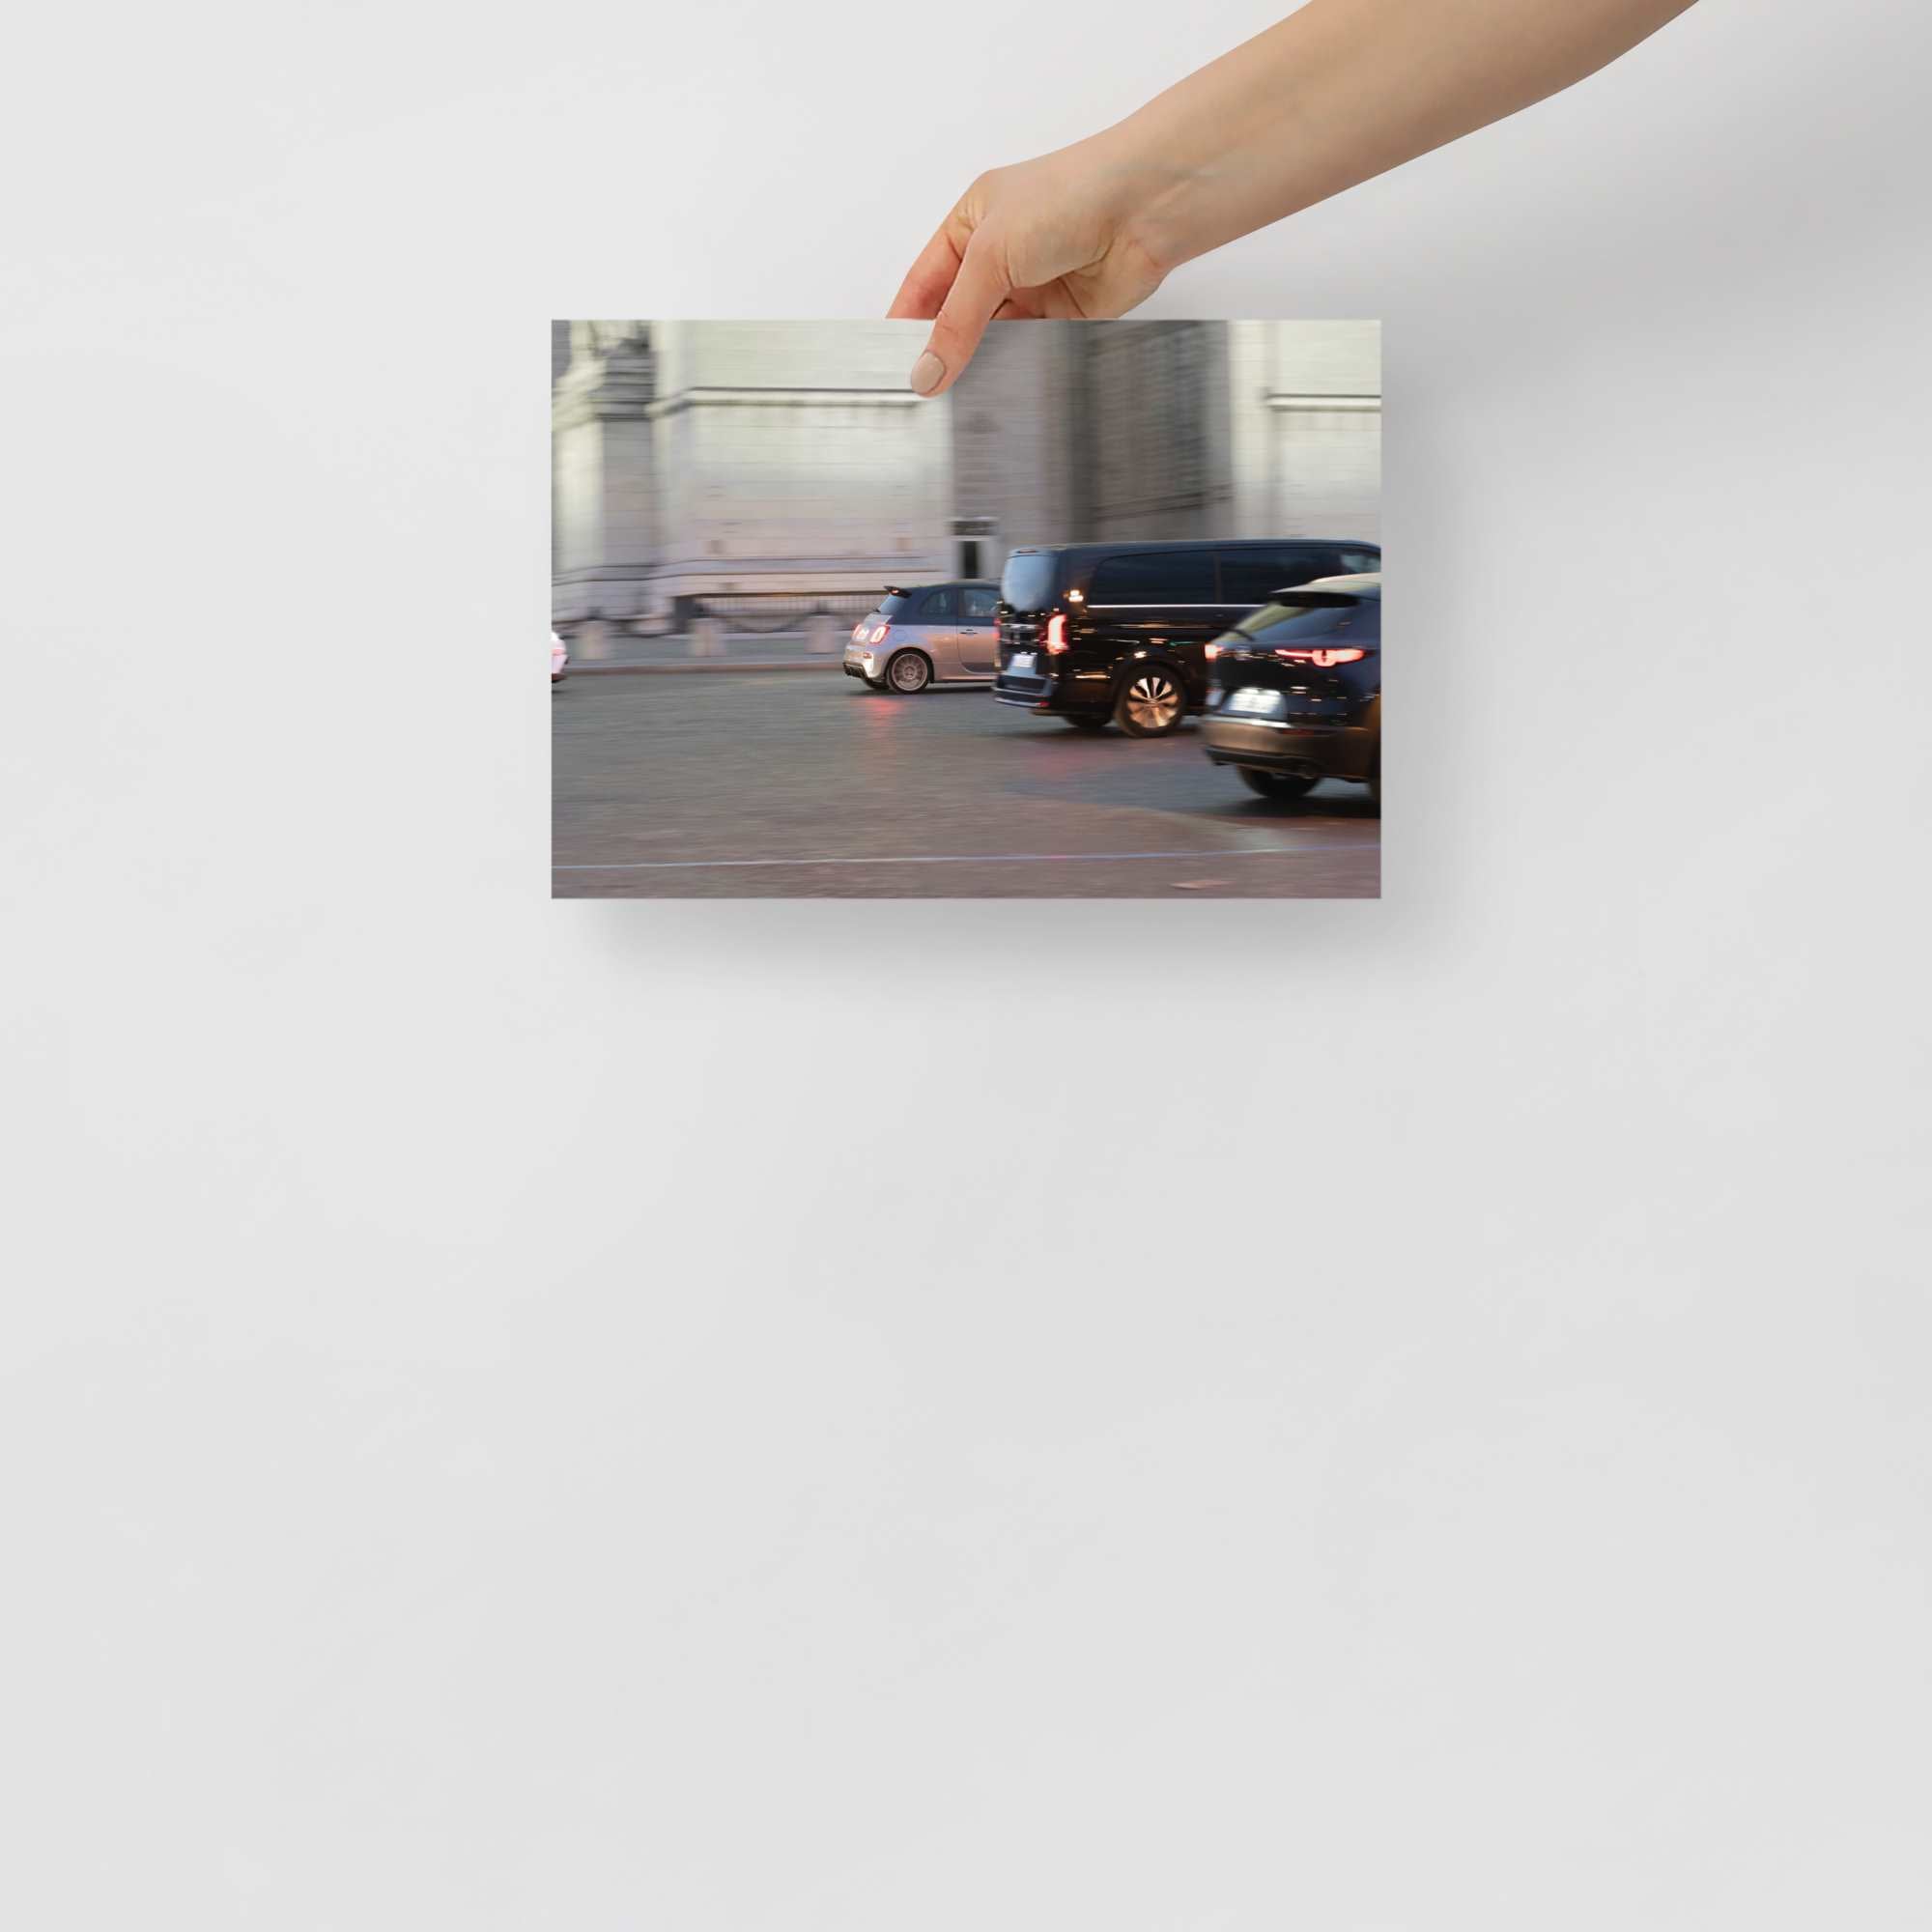 Poster mural - Fiat 500 Abarth – Photographie de voiture – Poster photo, poster XXL, Photo d’art, photographie murale et des posters muraux des photographies de rue unique au monde. La boutique de posters créée par un Photographe français.